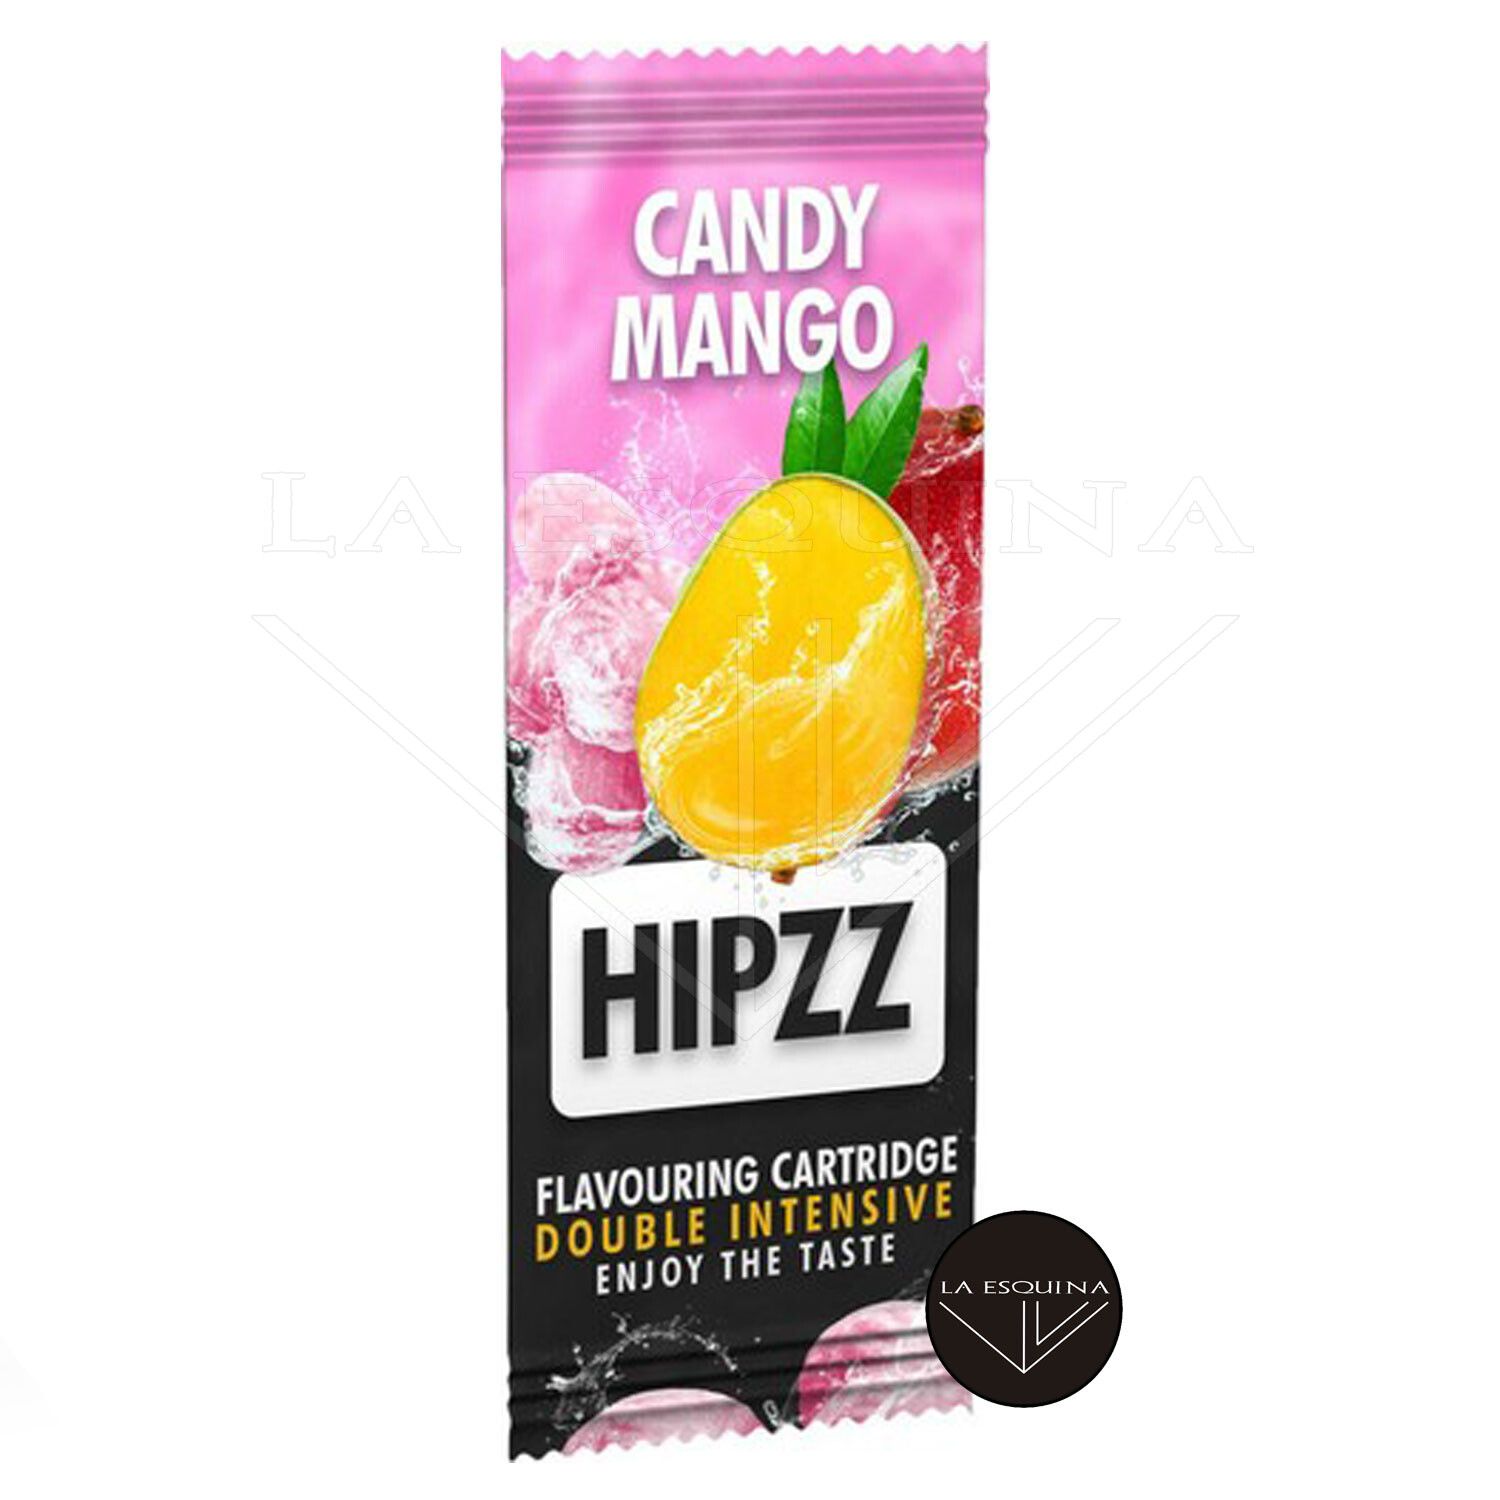 Tarjeta HIPZZ Candy Mango